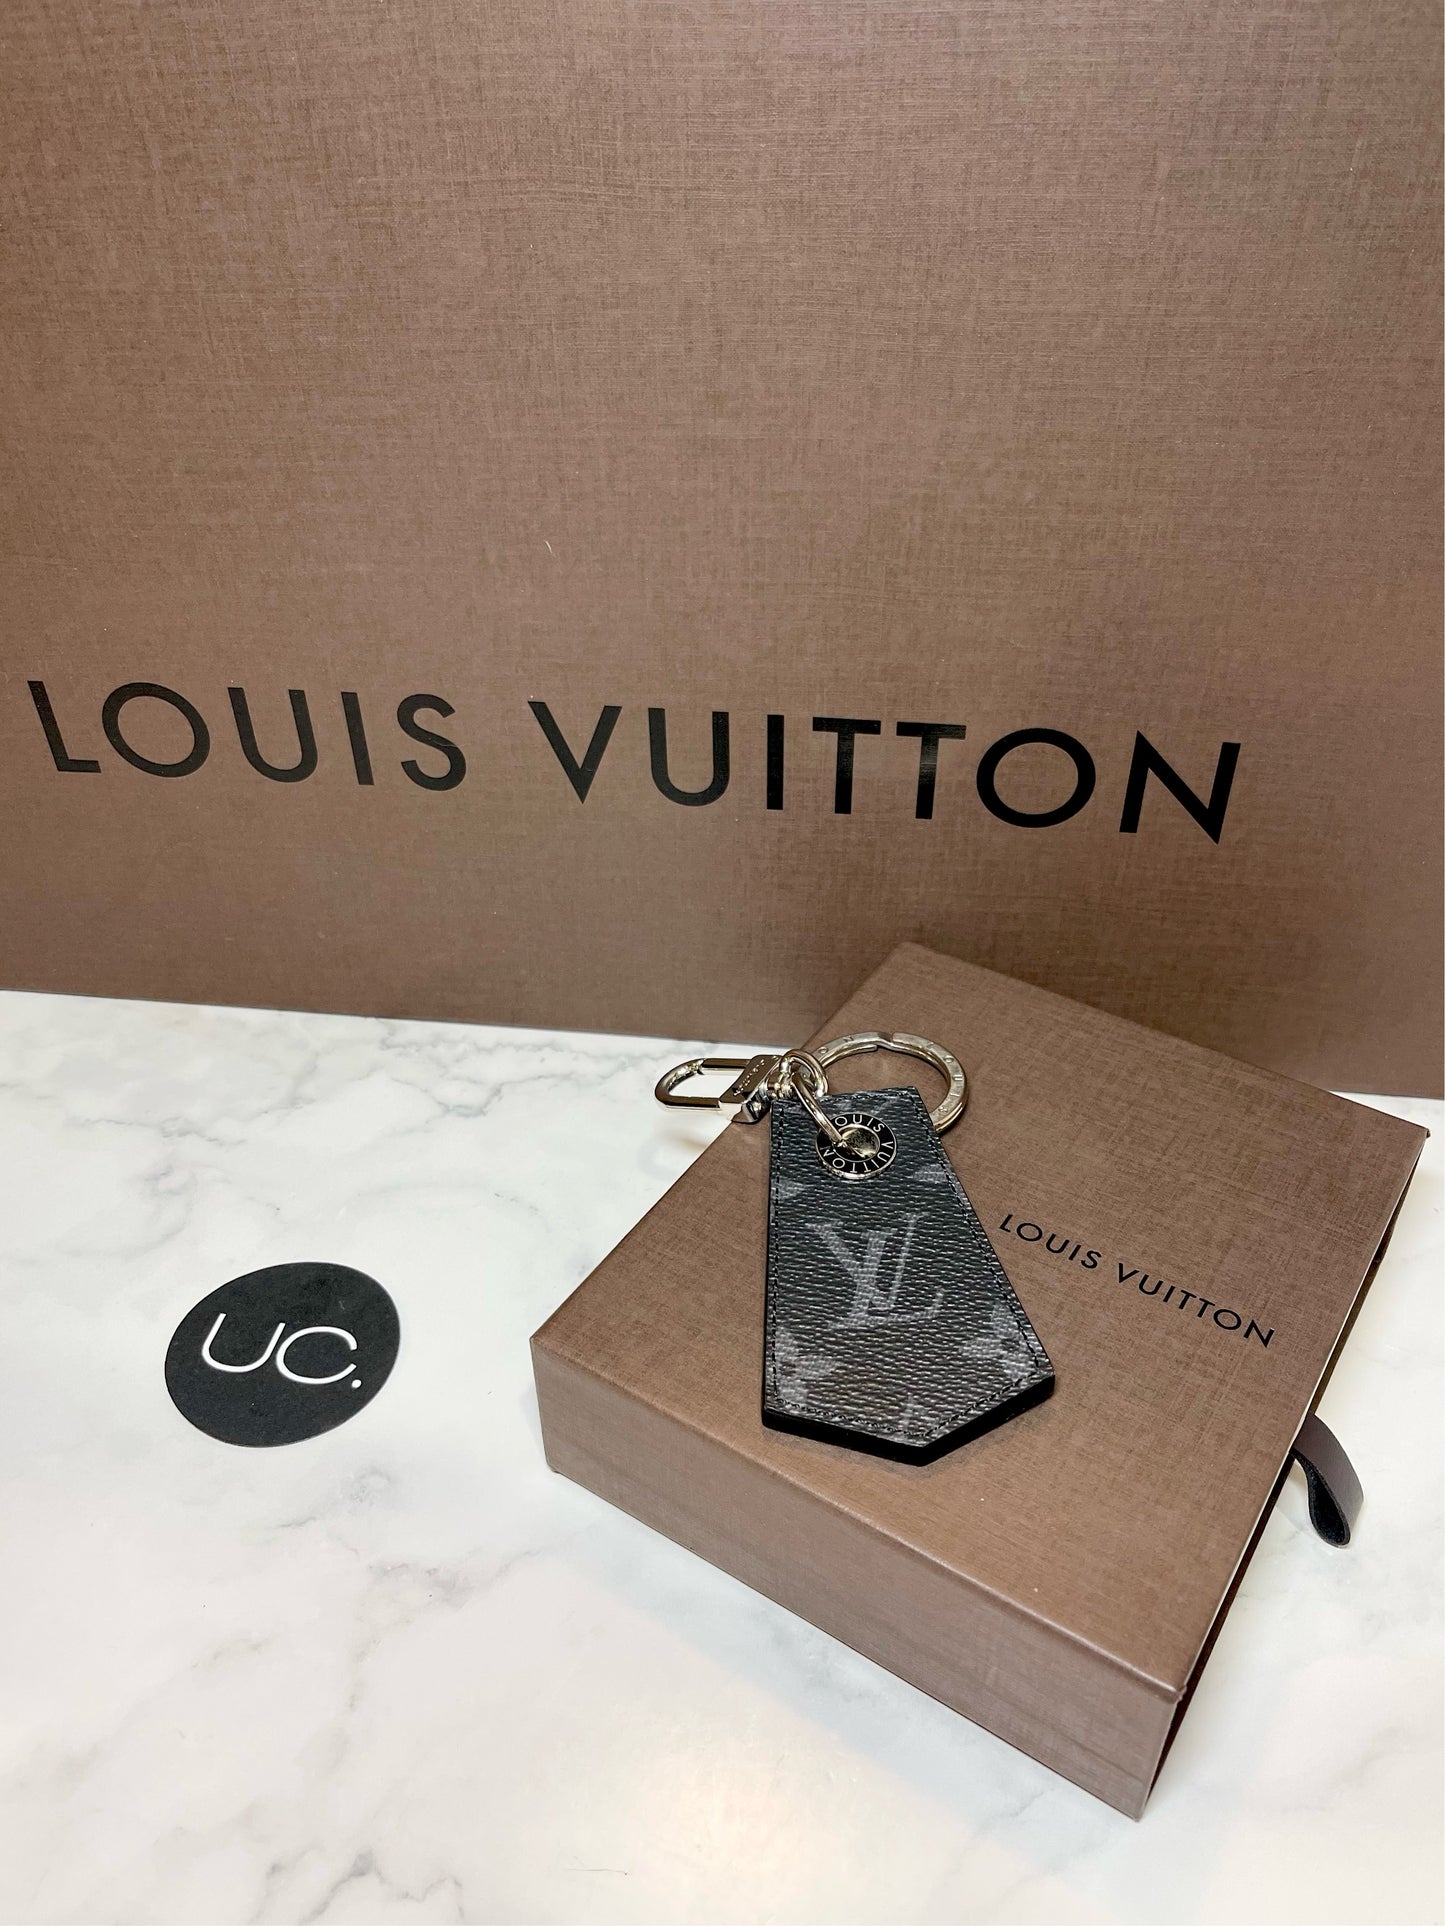 Shop Louis Vuitton Key pouch (M62650) by BrandShoppe